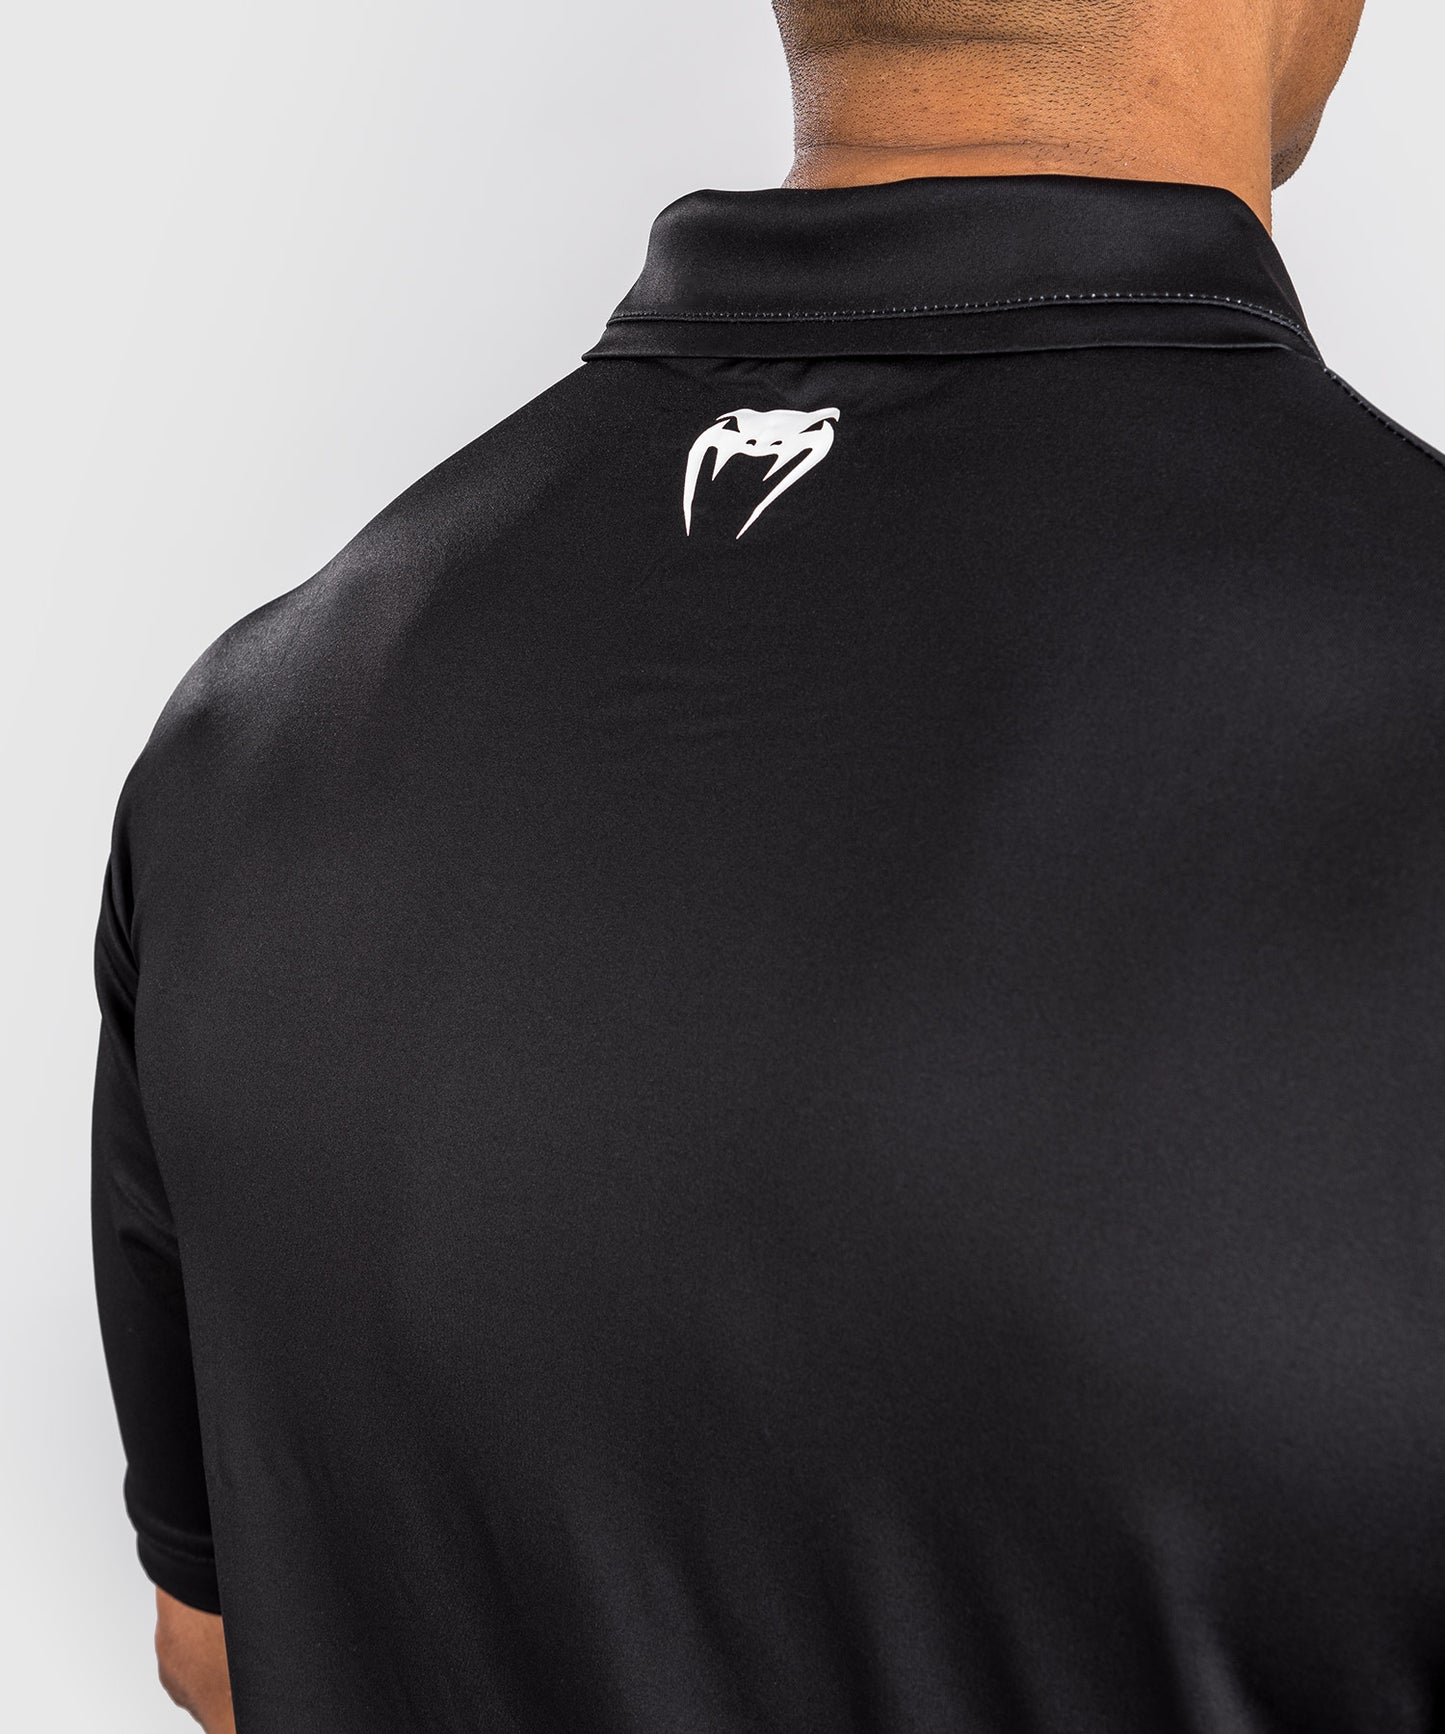 Dry Tech Polo Shirt Venum x Ares - Noir